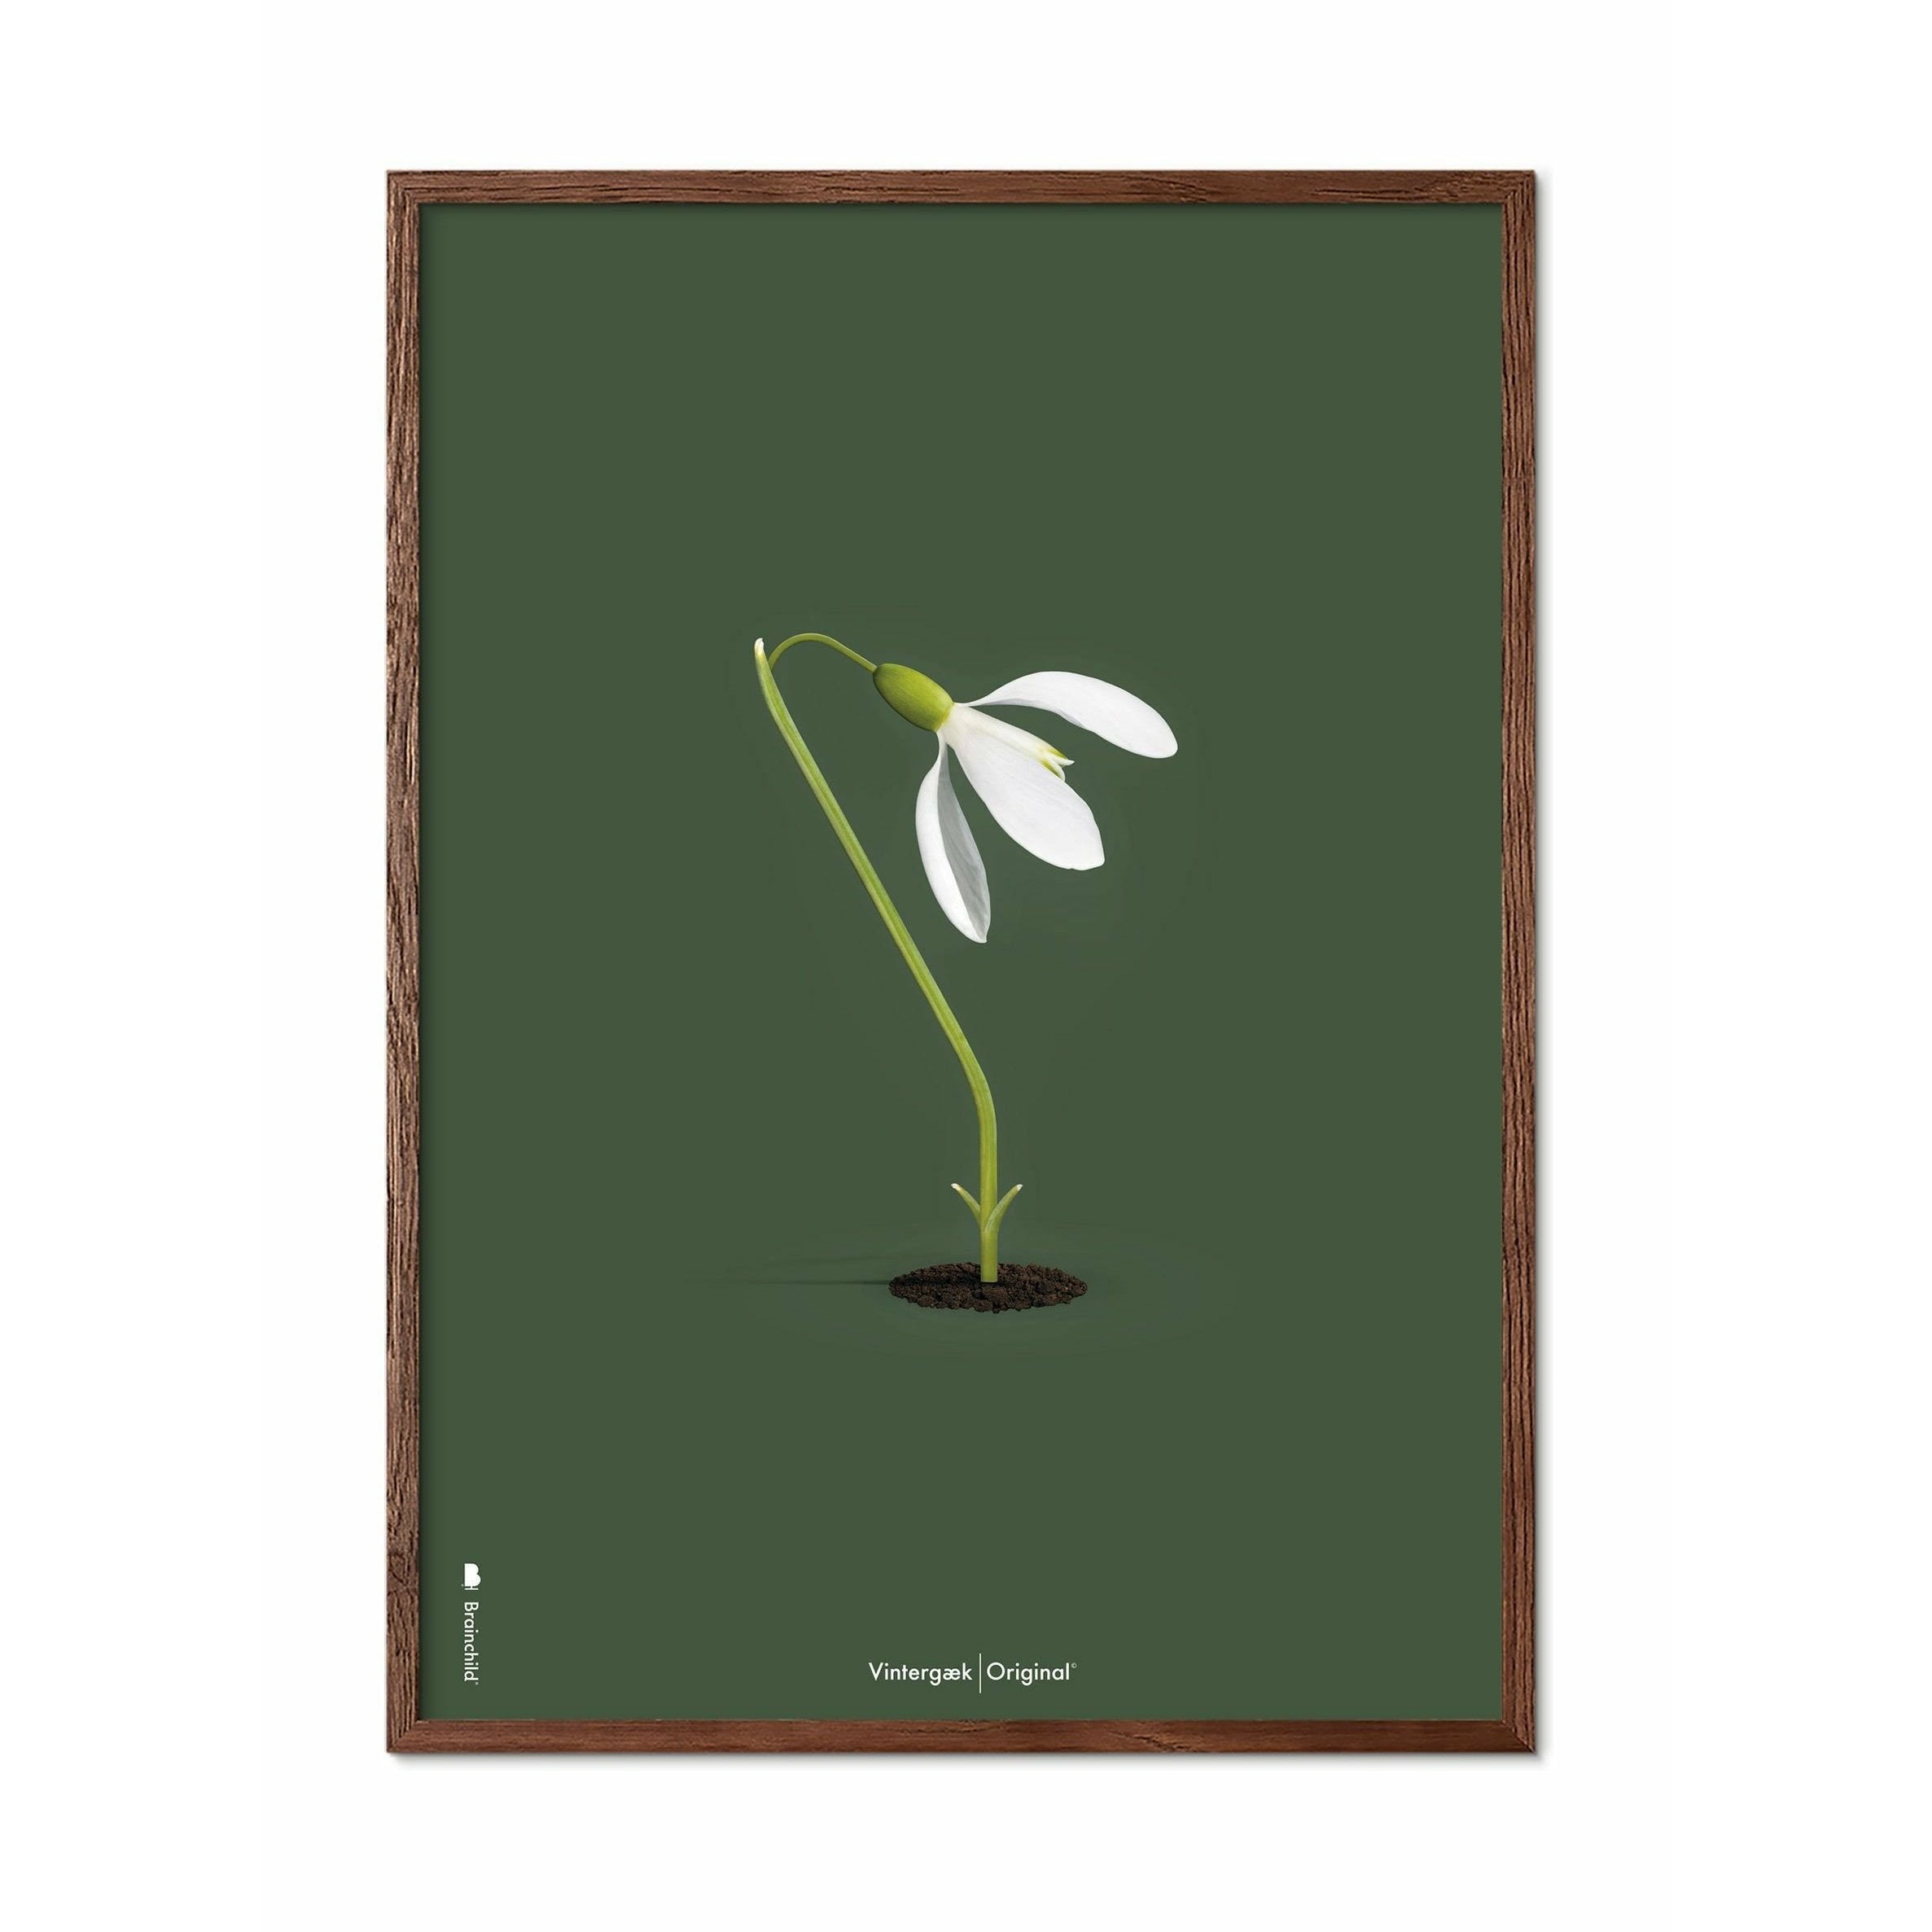 brainchild Snow -SoWall Classic -Poster, Rahmen aus dunklem Holz 30x40 cm, grüner Hintergrund